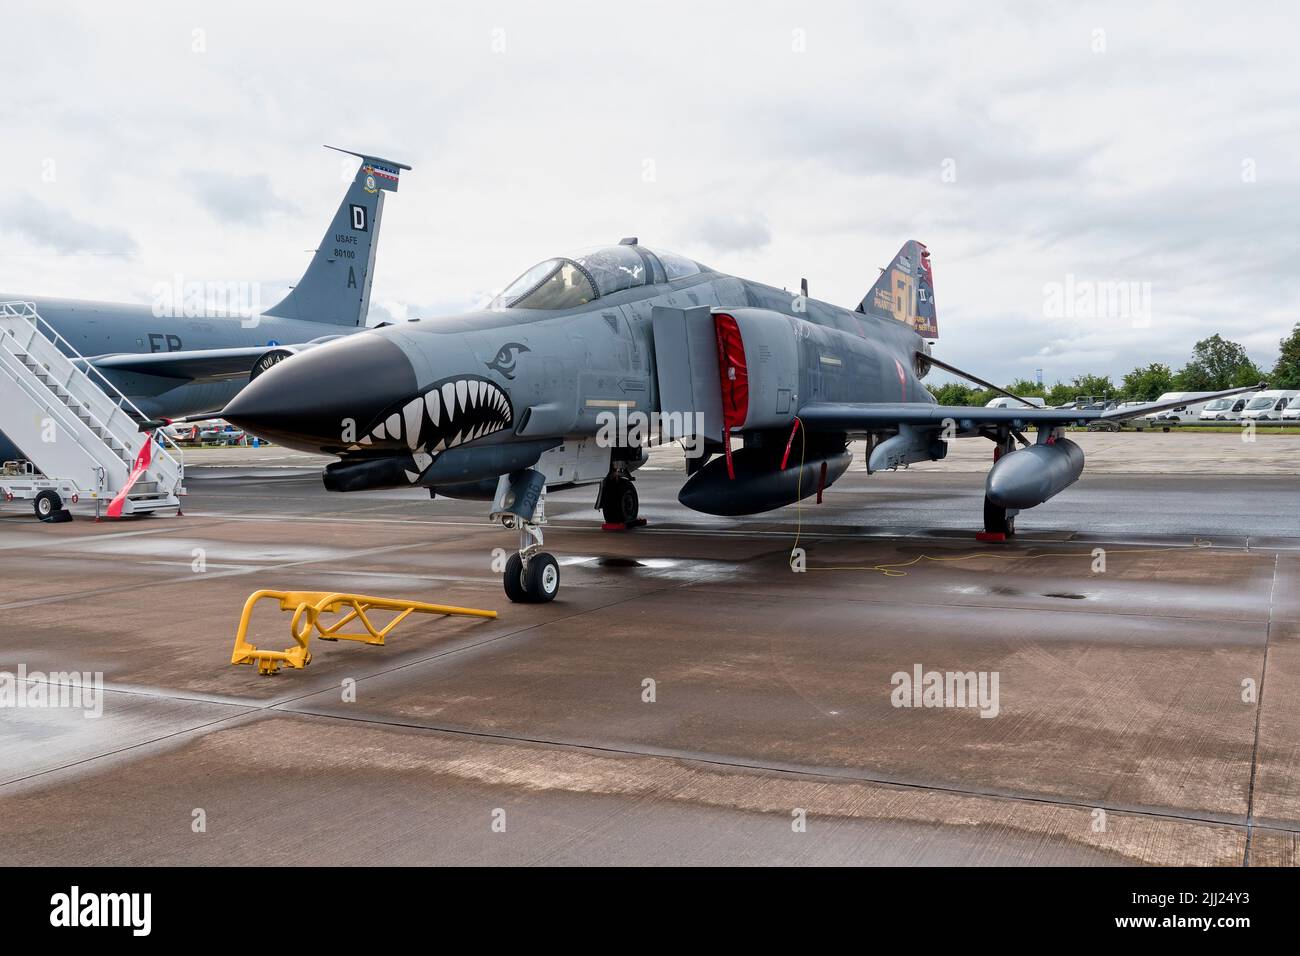 RAF Fairford, Gloucestershire, Royaume-Uni - 20 juillet 2019: Force aérienne turque F-4E Terminator 2020 fantôme vu au RIAT 2019 tenu à RAF Fairford Banque D'Images